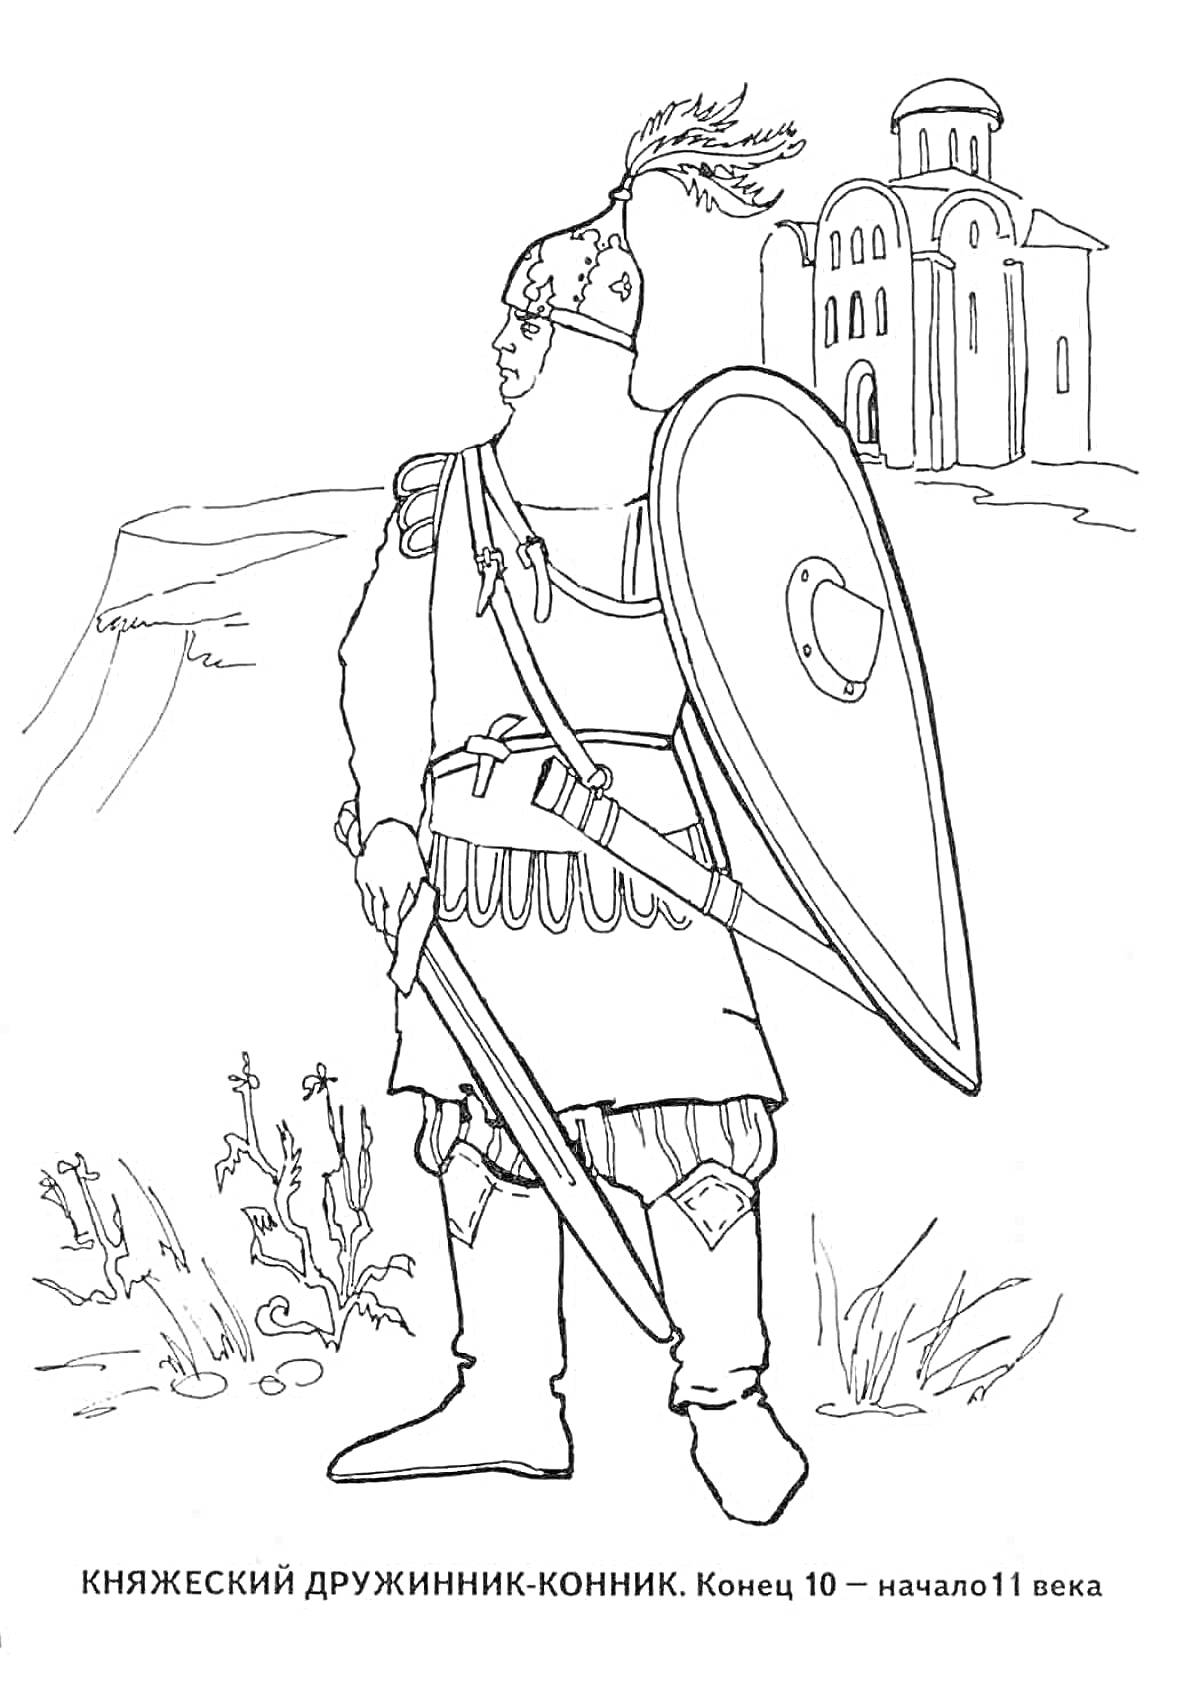 Раскраска Княжеский дружинник-конник конца 10 – начала 11 века с мечом, щитом и шлемом на фоне церкви и холмов